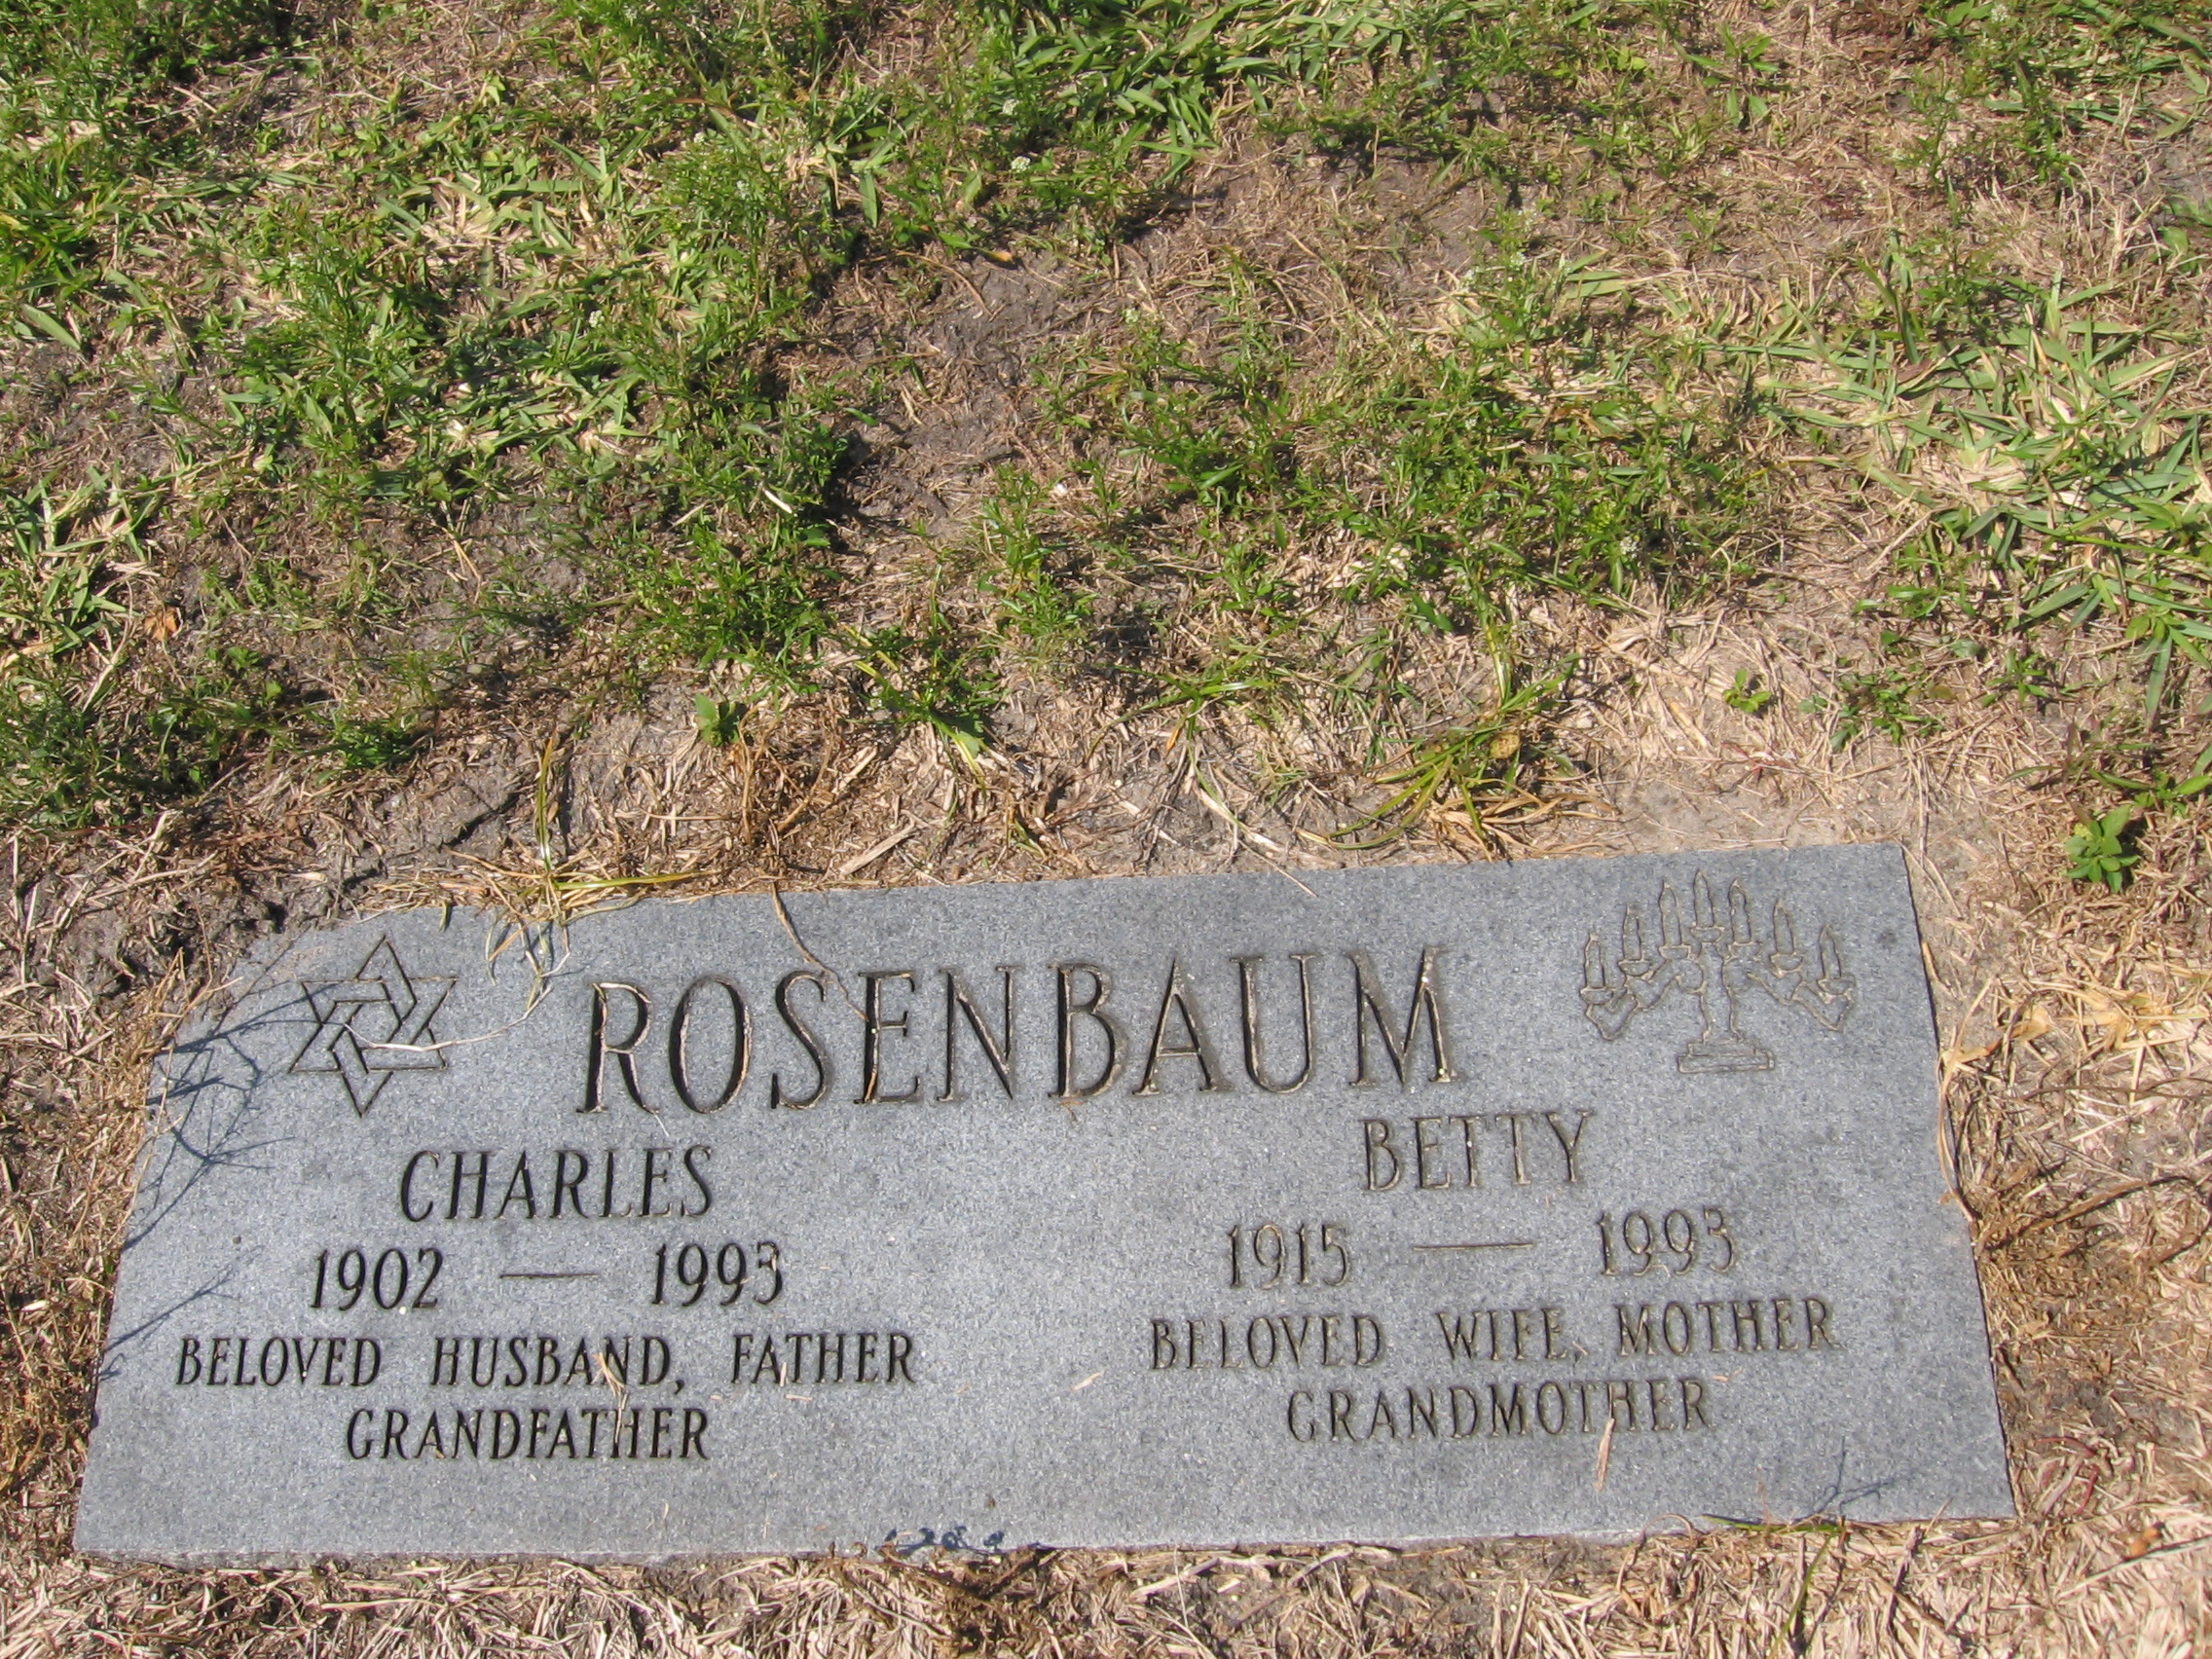 Betty Rosenbaum